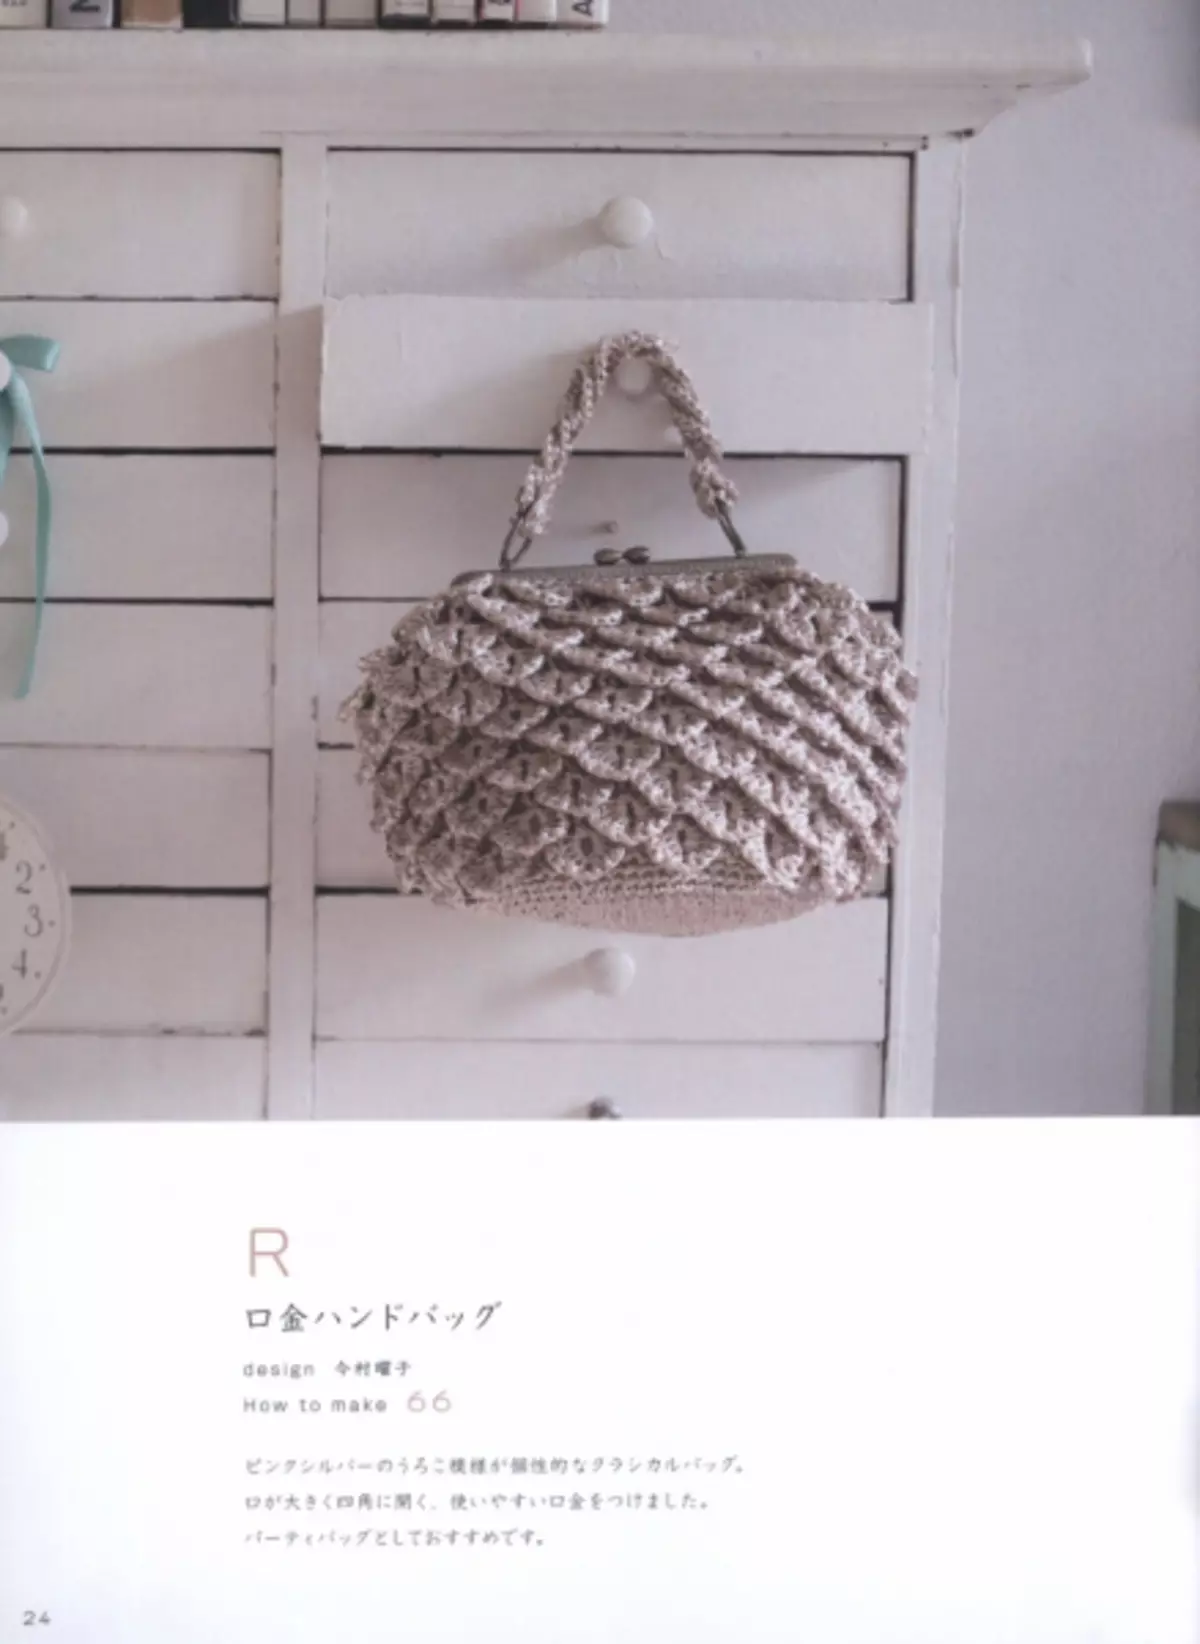 ခေါက်အိတ်များ။ Crochet Mania ၏အိတ်ဂျာနယ်